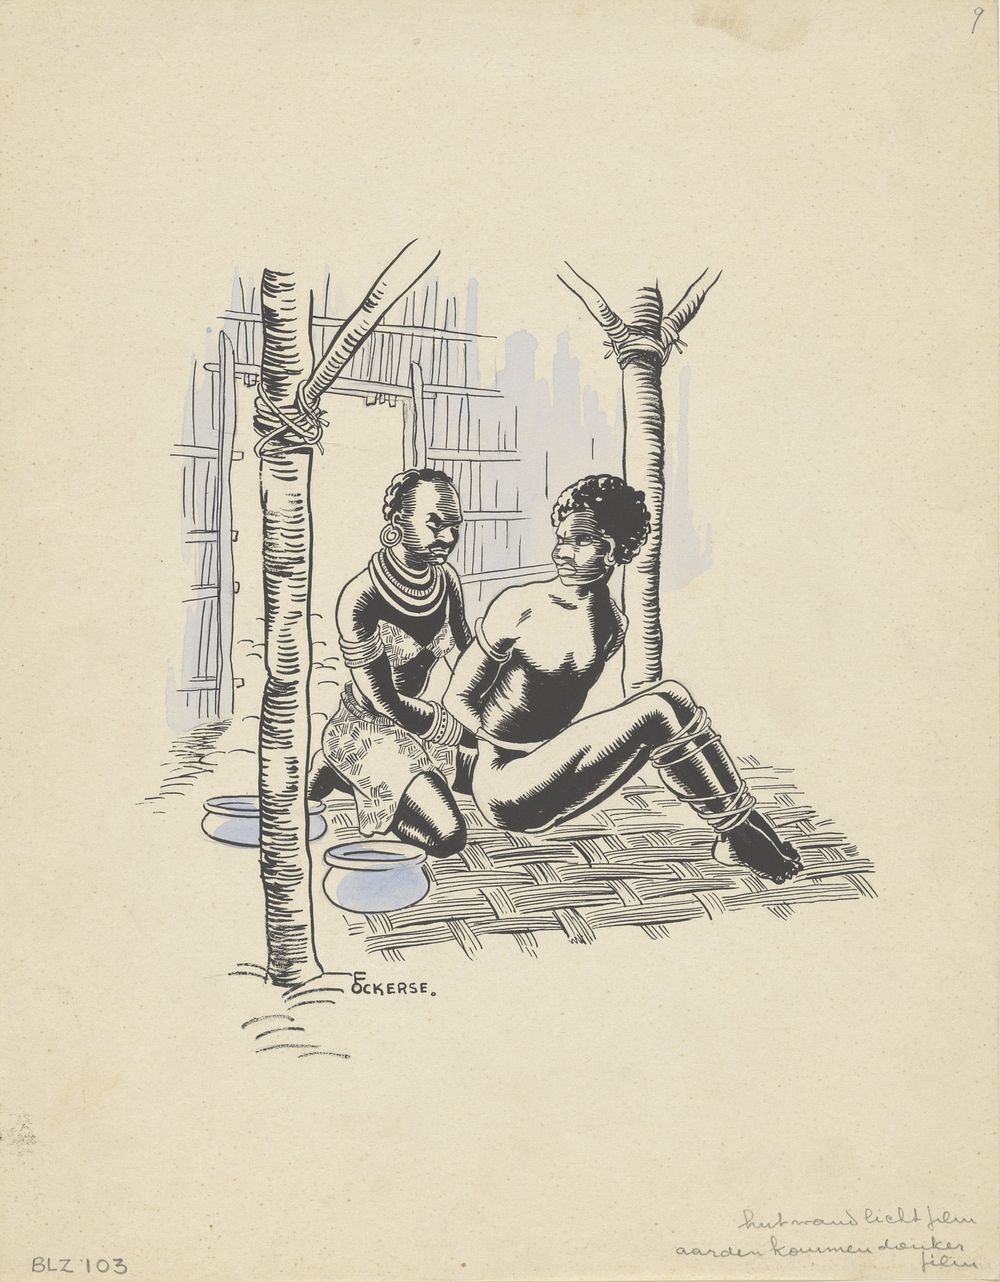 Nieuw-Guineese vrouw houdt een man gevangen (in or before 1936) by F Ockerse